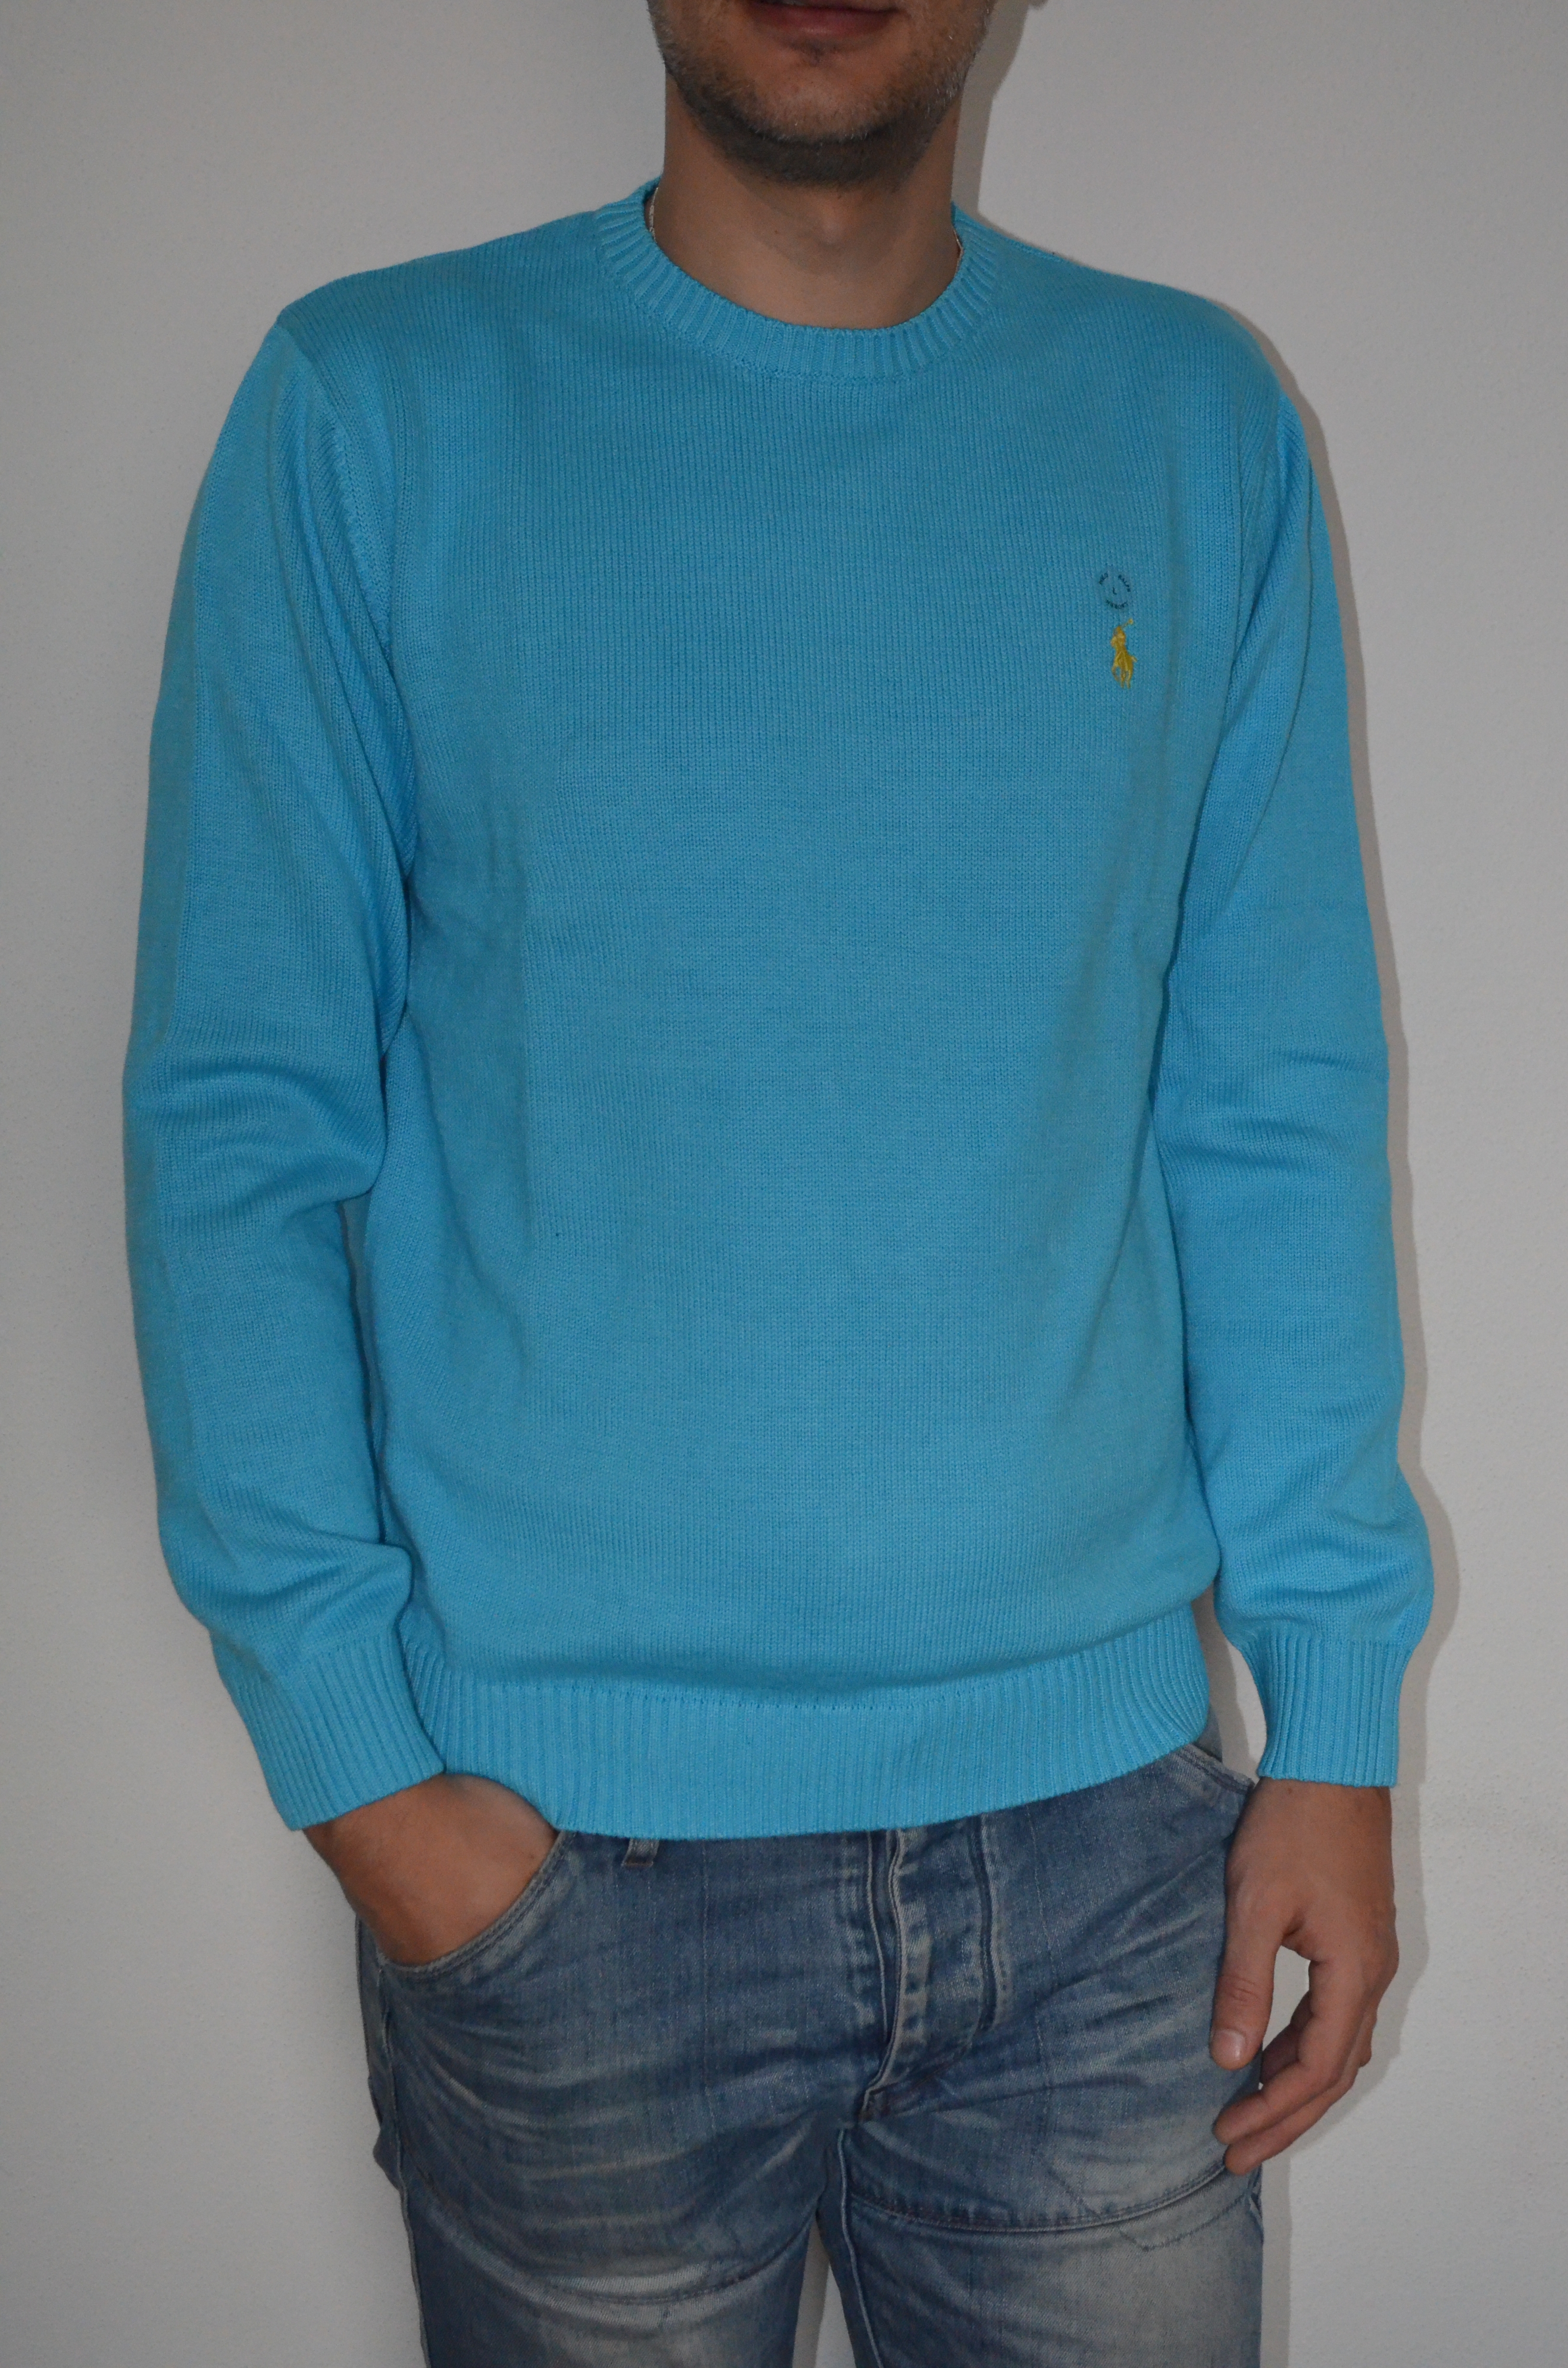 Ralph Lauren pánský svetr sv.modrý velikost: XL